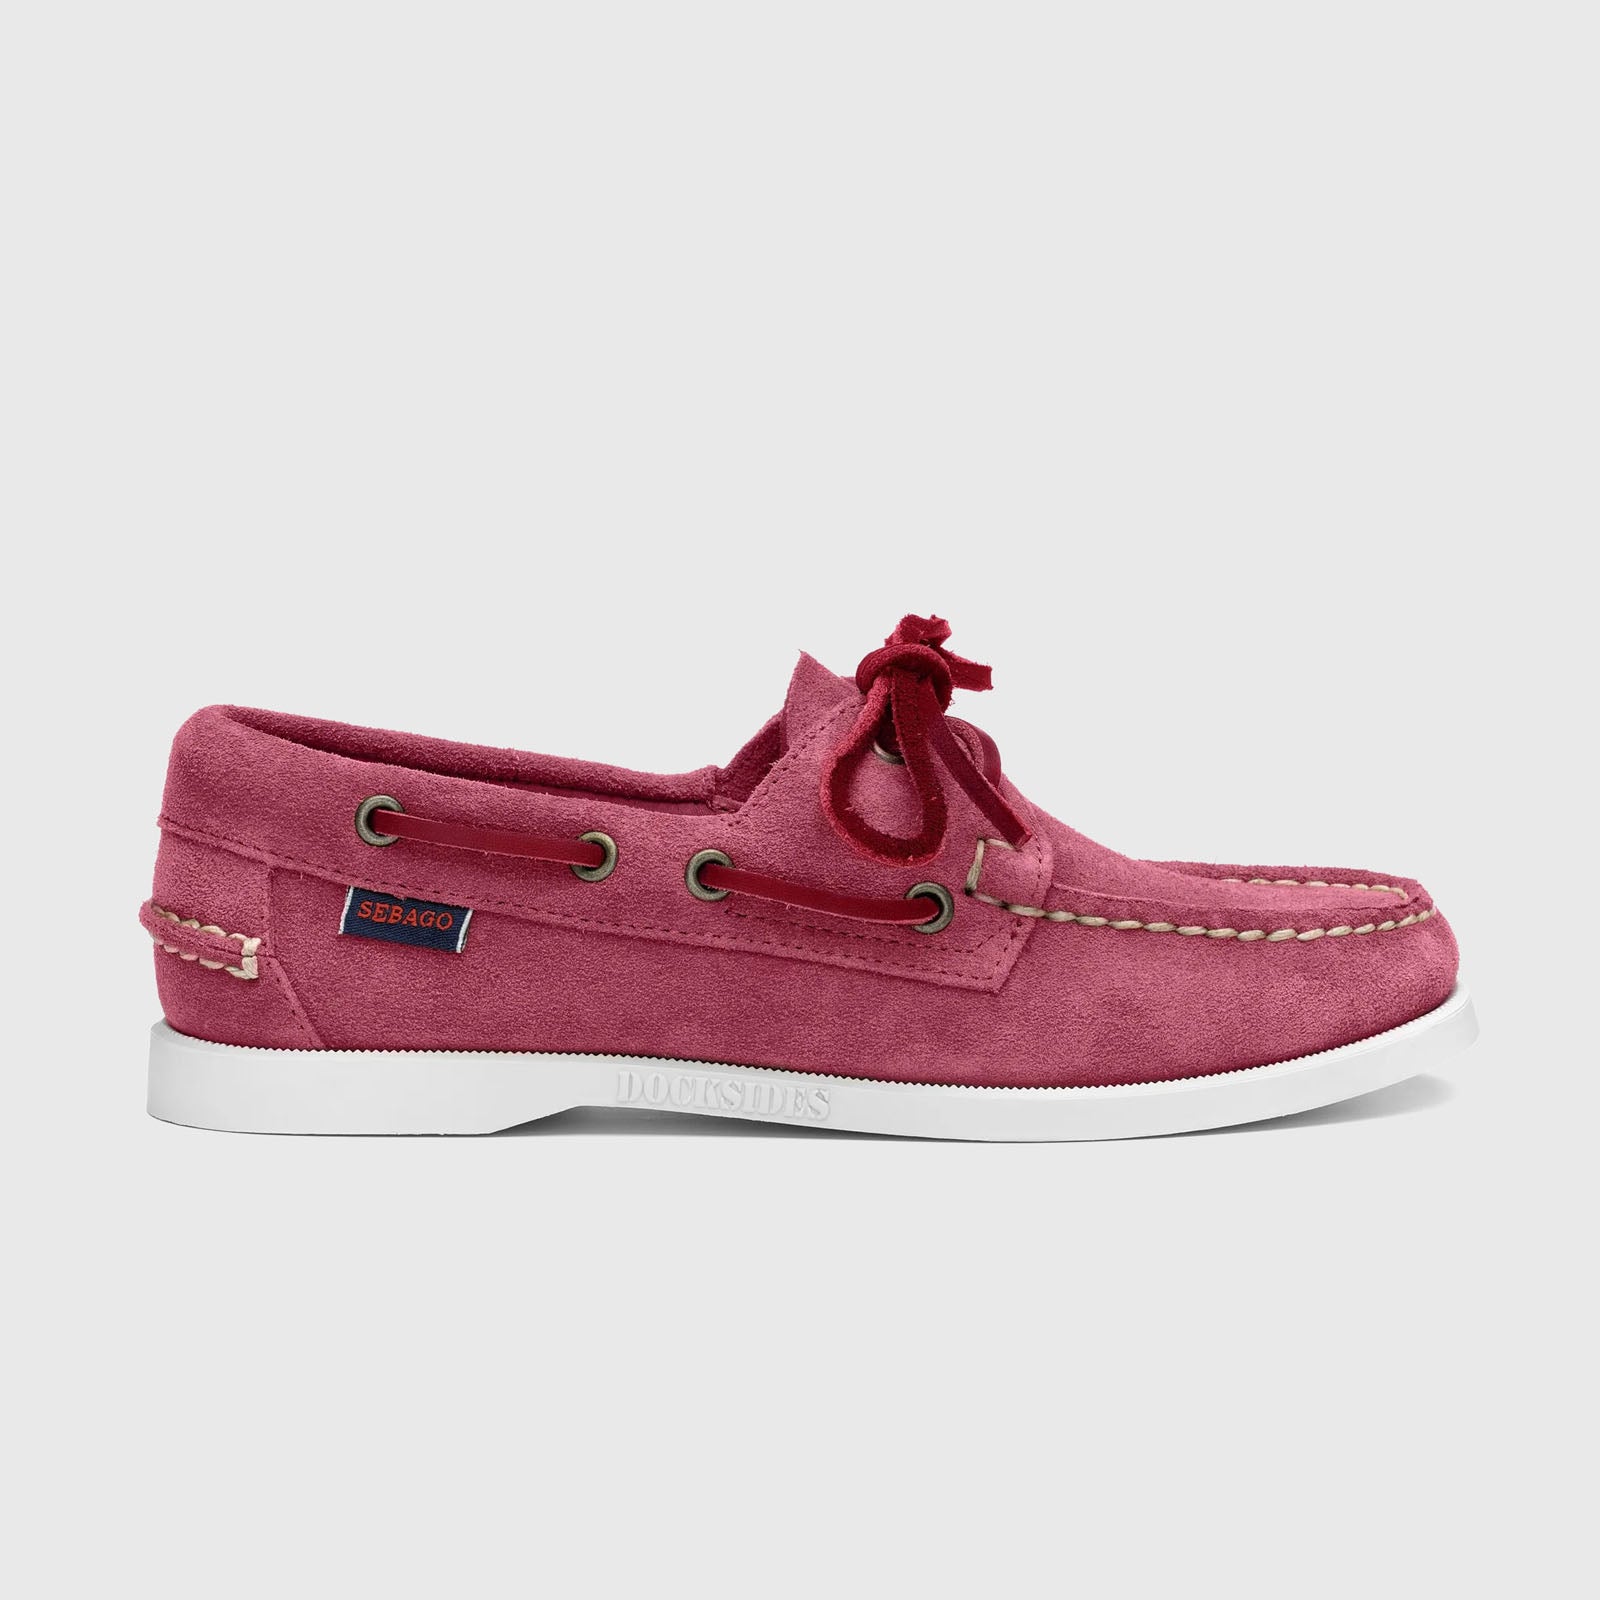 Sebago Docksides Portland Flesh Out Leather Loafer in Pink - 6